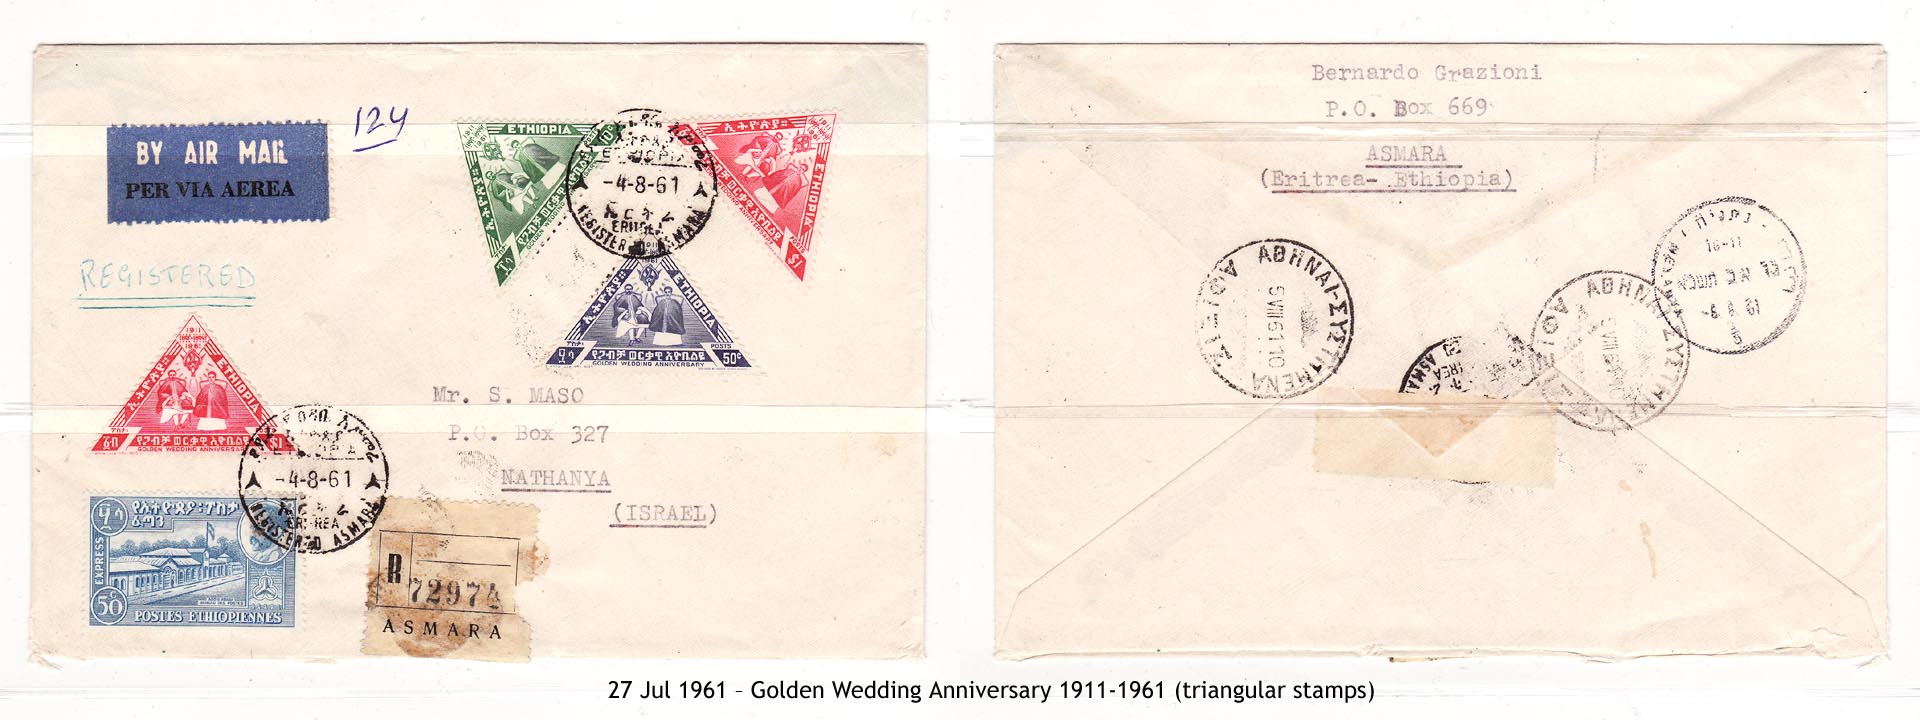 19610727 – Golden Wedding Anniversary 1911-1961 (triangular stamps)